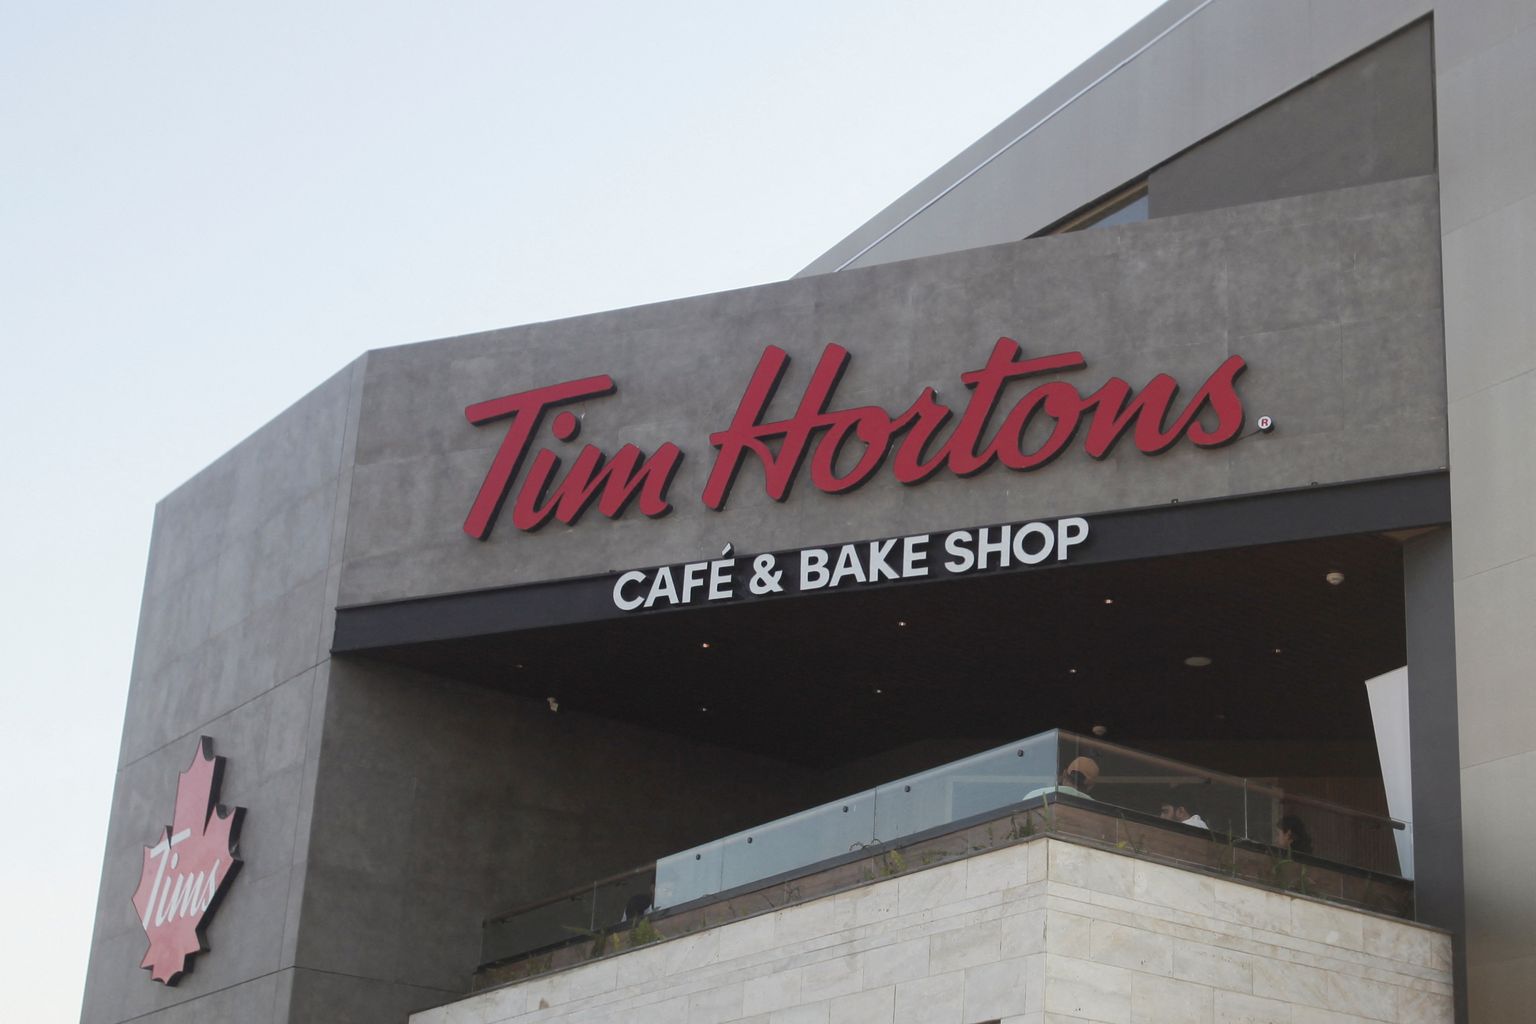 Kanada kohvikuketi Tim Hortonsi logo